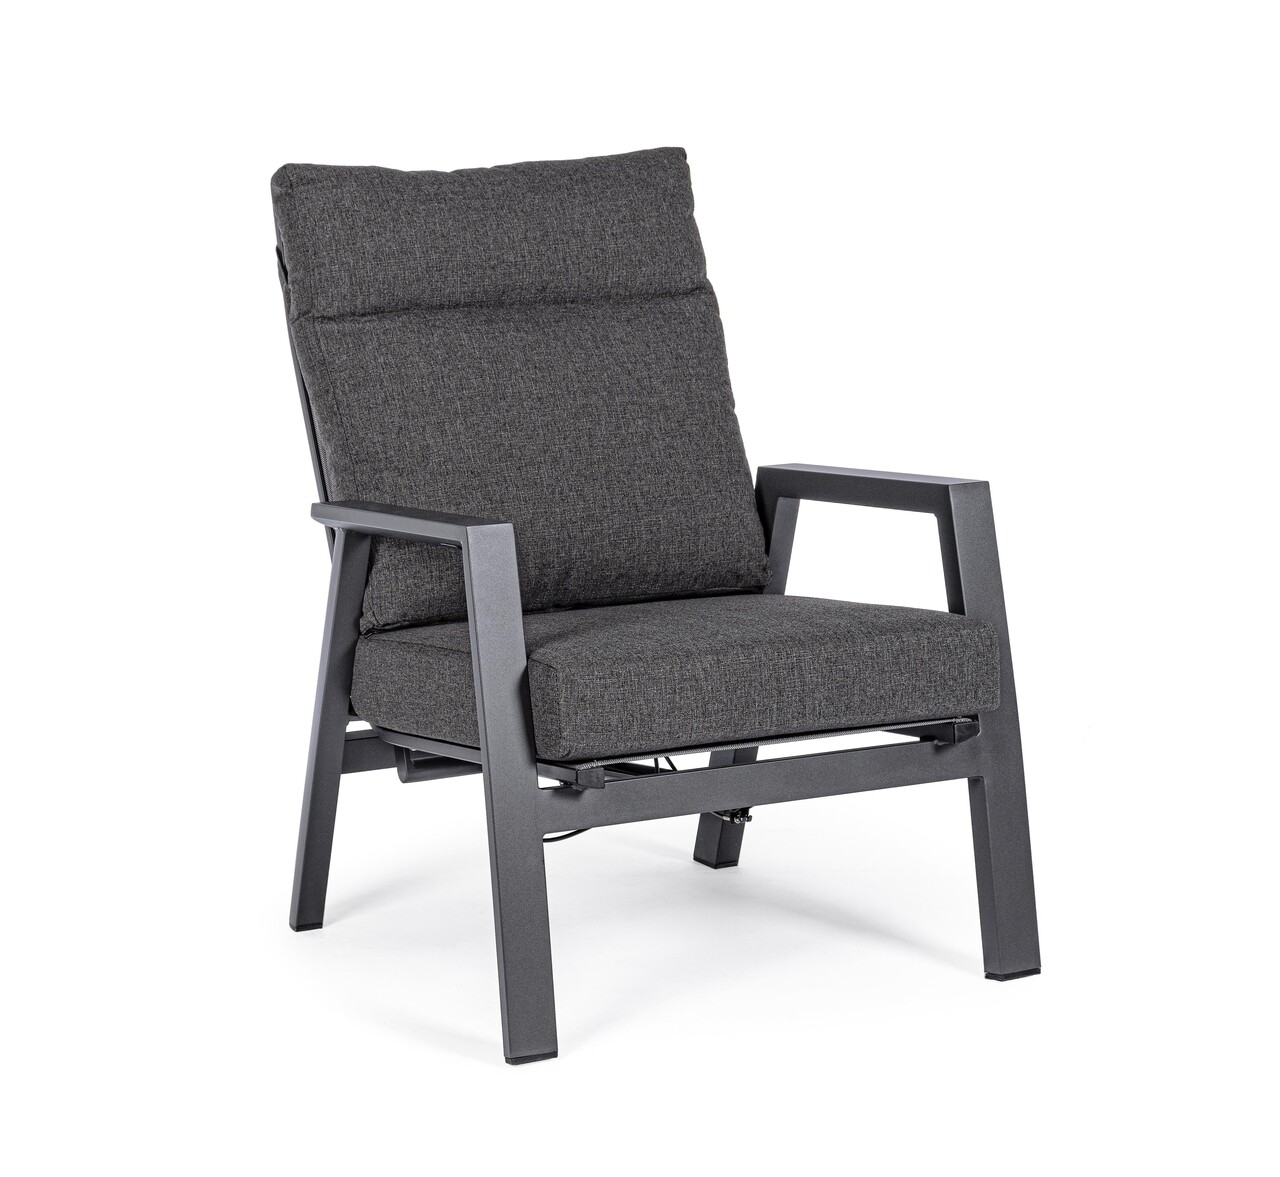 Kledi Terasz/kerti fotel, Bizzotto, 72 x 81 x 98 cm, állítható hátrész, alumínium/textil 1x1, szénszín